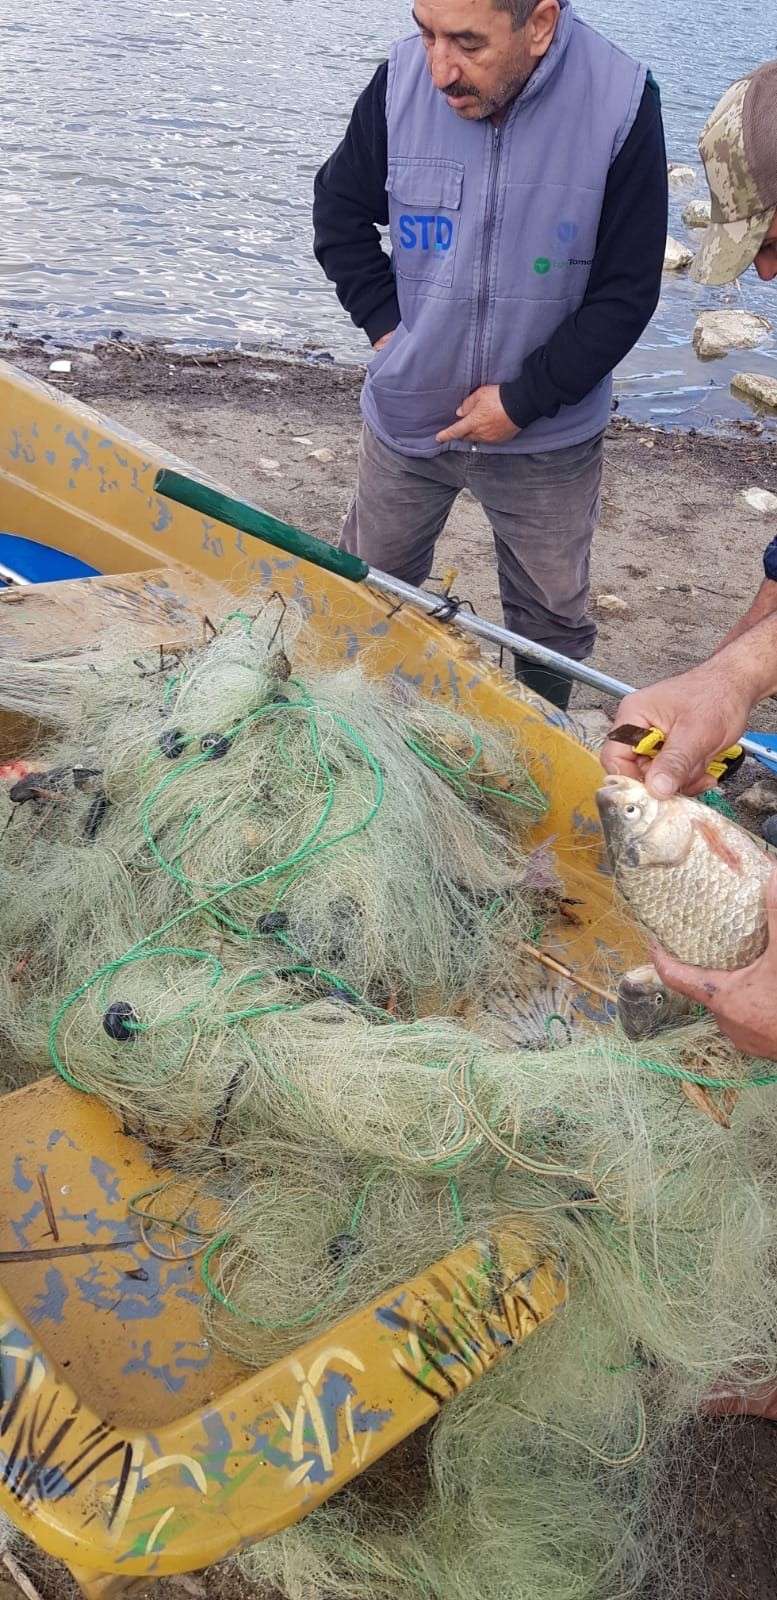 Denizli’nin Buldan ilçesinde Derbent Baraj gölünde kaçak avcılık yapan kişilerin ağları yakılırken, ağlara takılan balıklar ise göle bırakıldı.